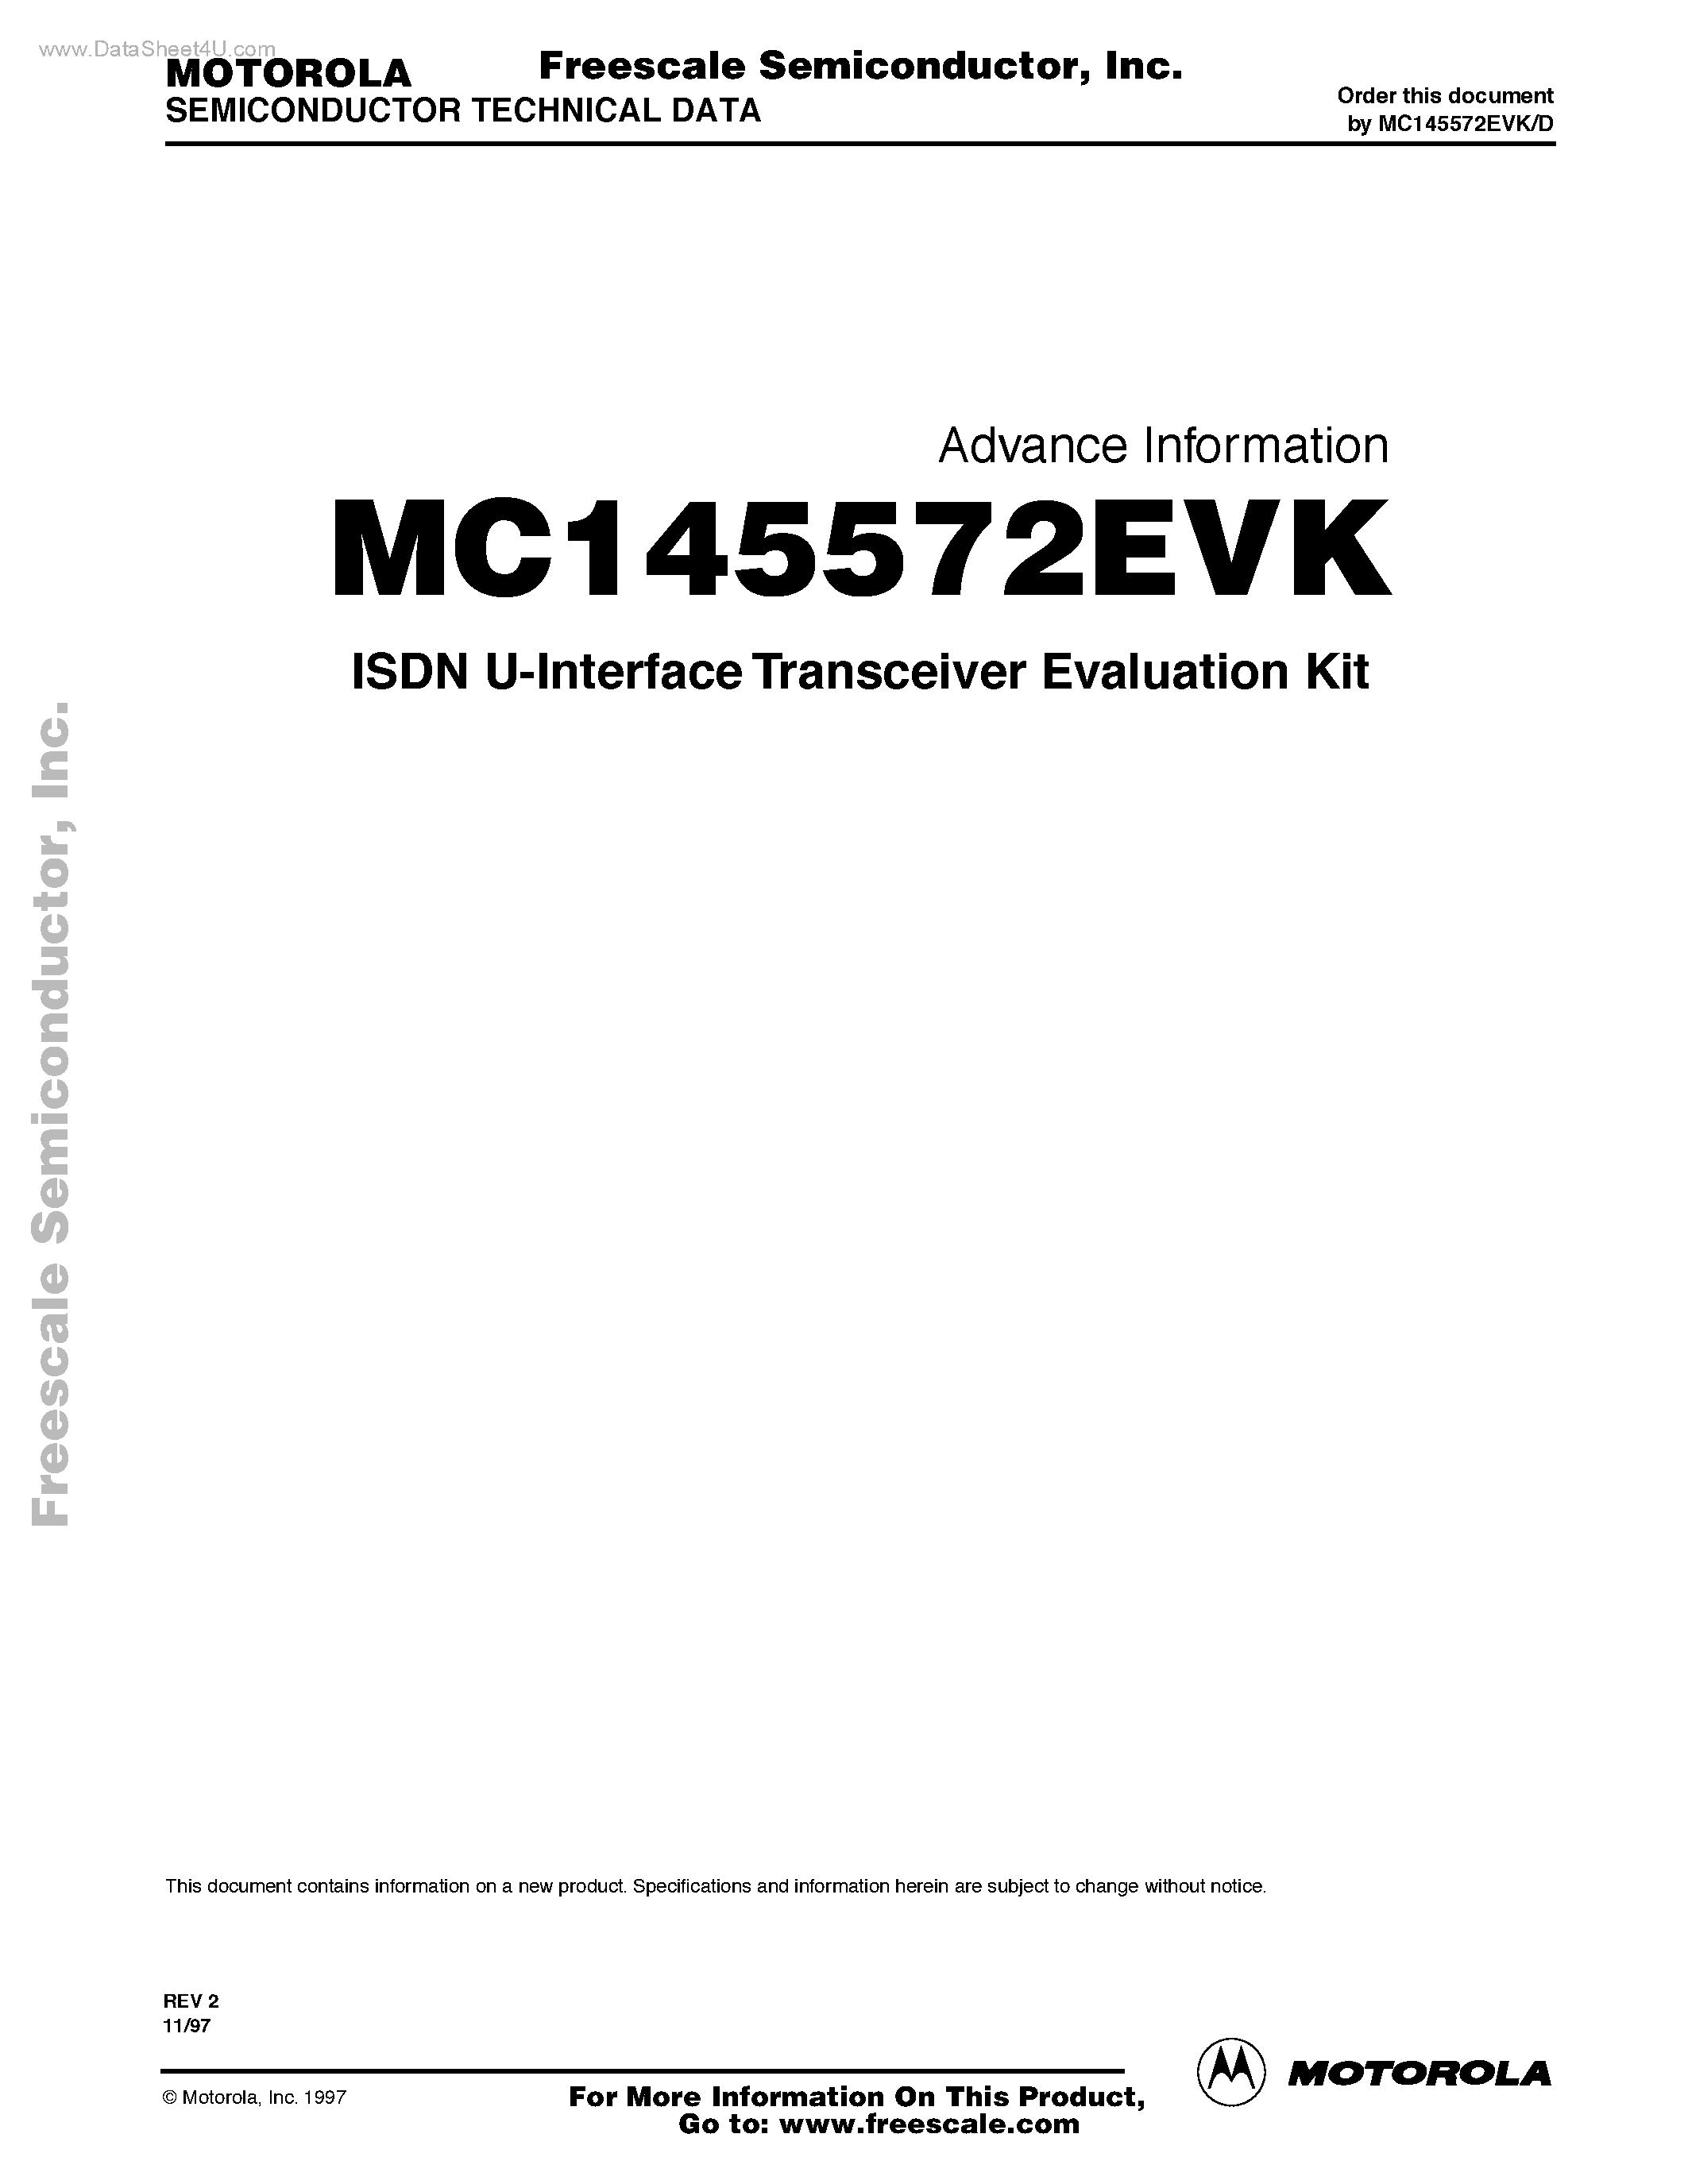 Datasheet MC145572EVK - ISDN U-Interface Transceiver Evaluation Kit page 1